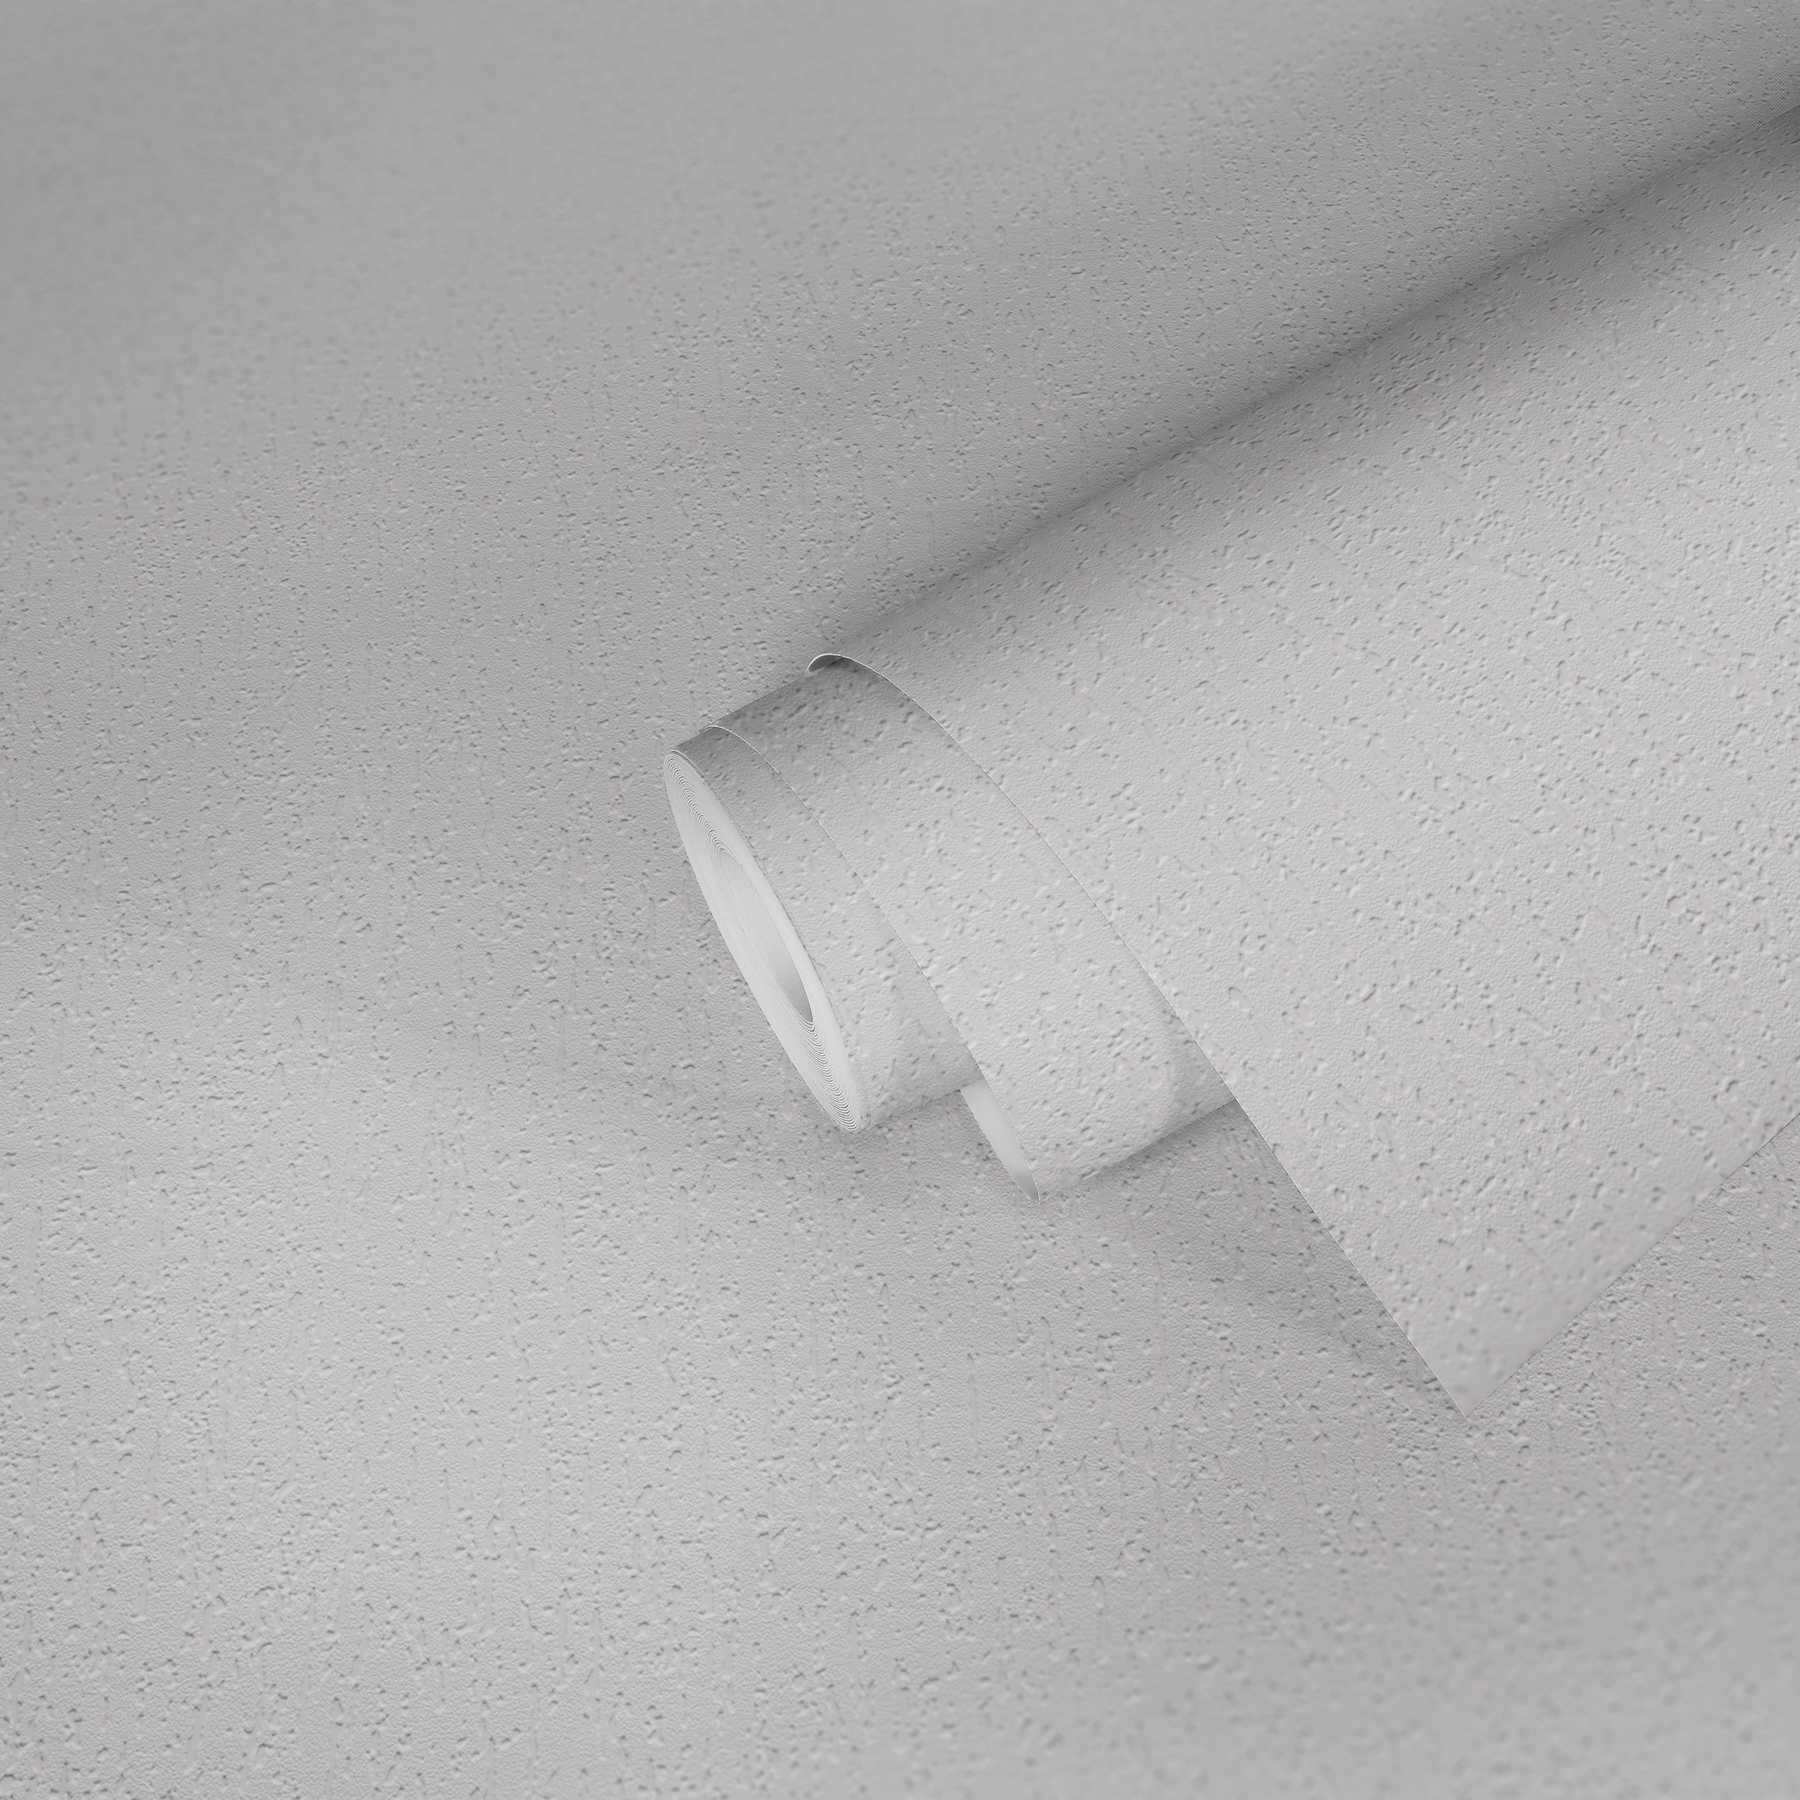             Weiße Papiertapete Rauputz-Optik mit 3D Struktur
        